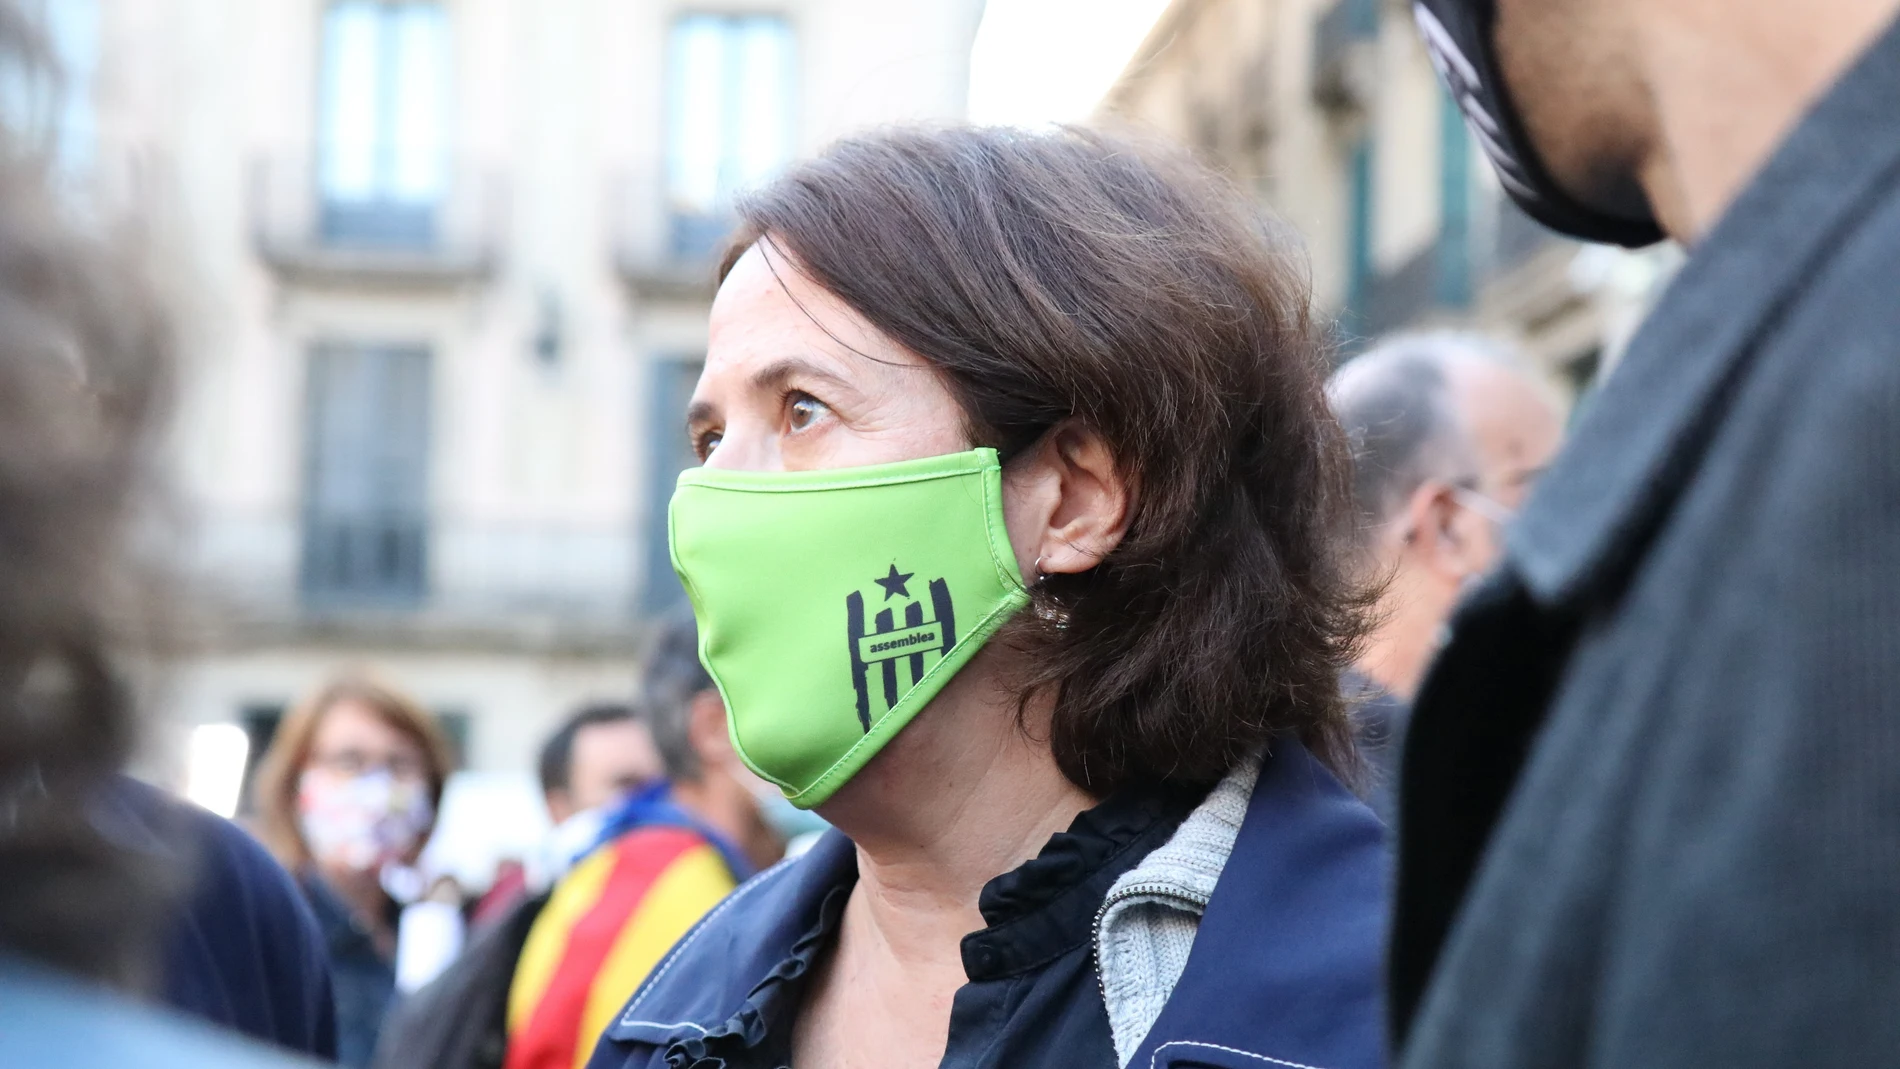 La presidenta de la ANC, Elisenda Paluzie, en la protesta en la plaza Sant Jaume de Barcelona por la inhabilitación de Torra